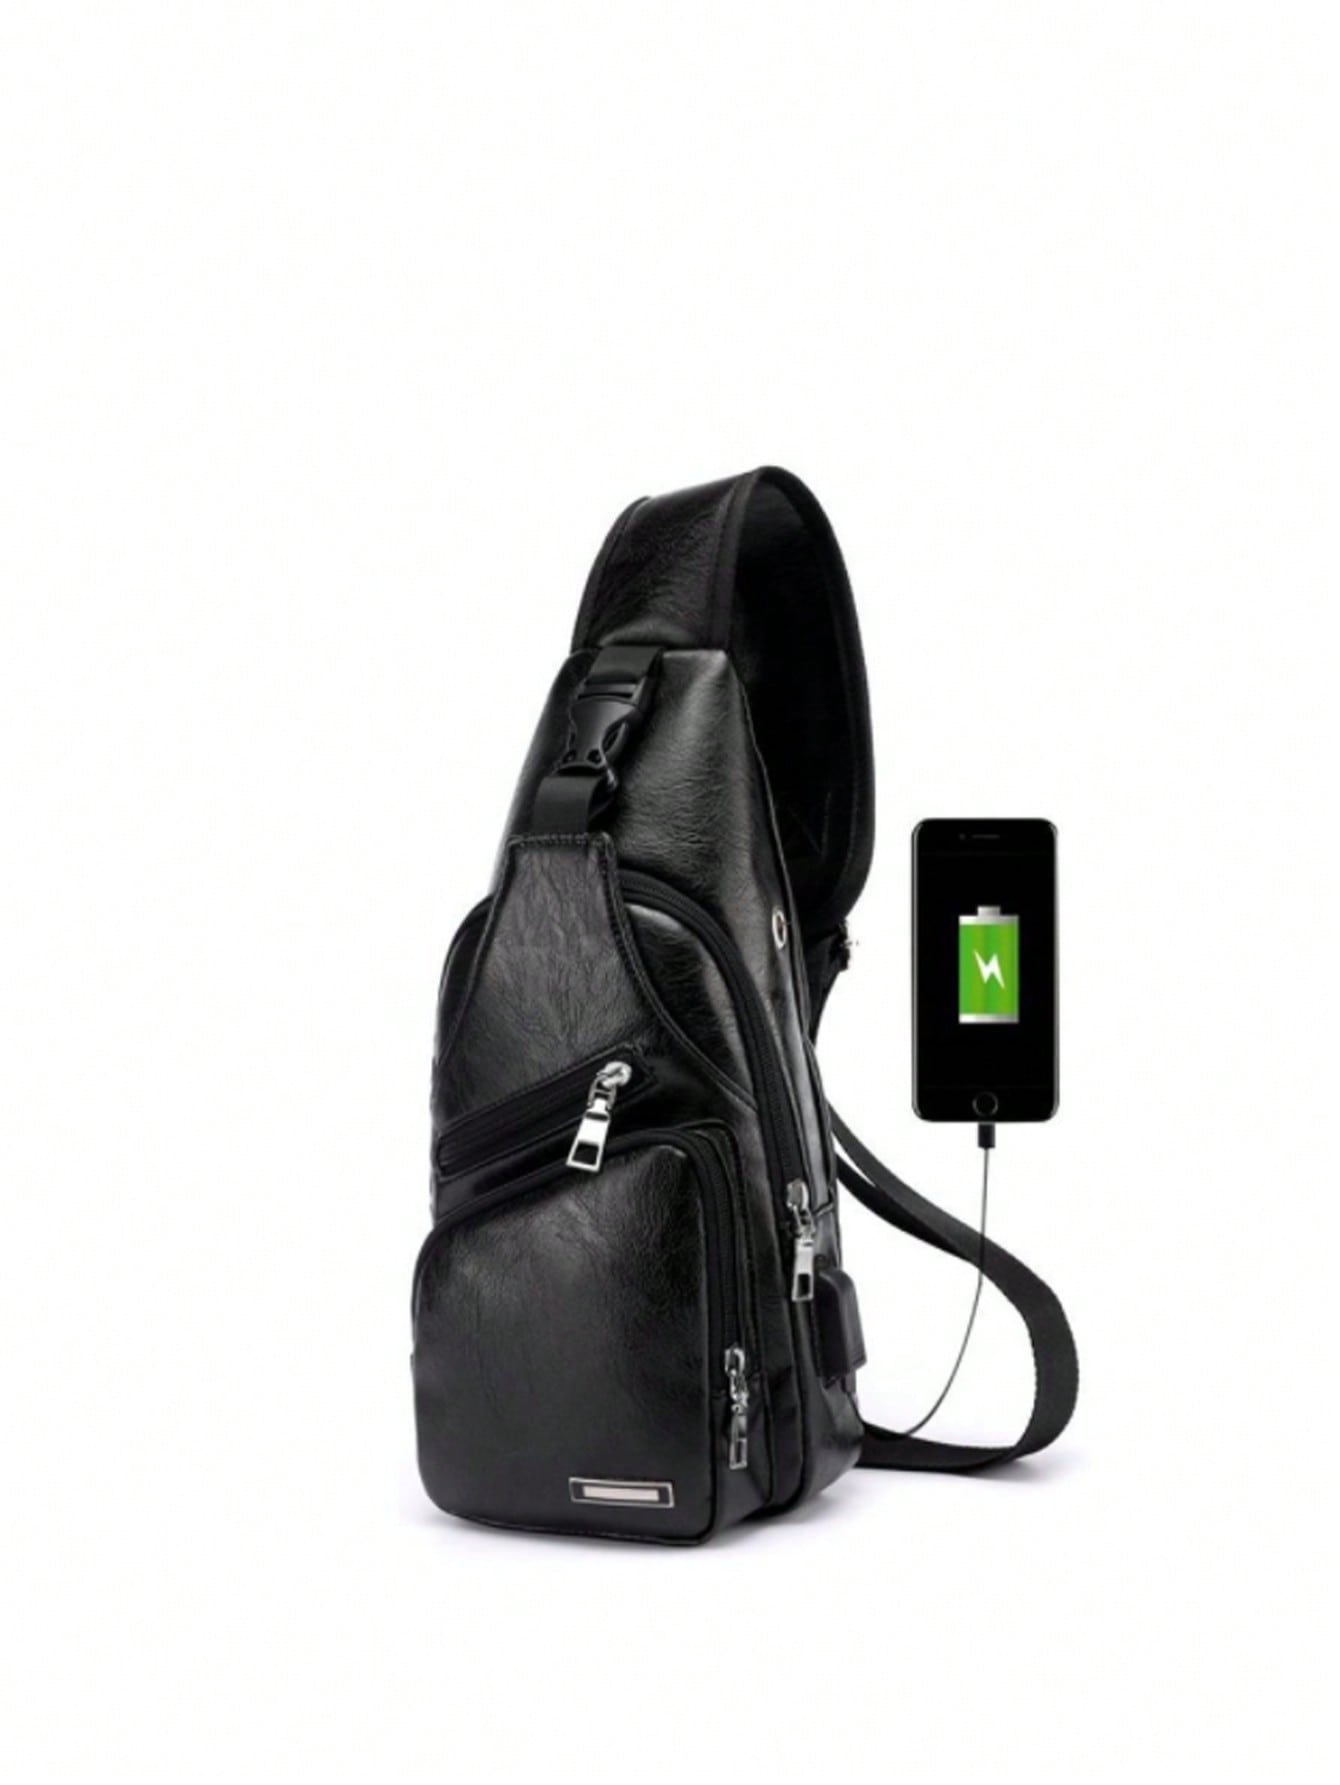 1 шт. новая мужская сумка через плечо с USB-портом для зарядки нагрудная сумка спортивная сумка через плечо, черный kingsons горячая нагрудная сумка новая анти вор сумка через плечо водоотталкивающие сумки через плечо 10 дюймов ipad модные сумки